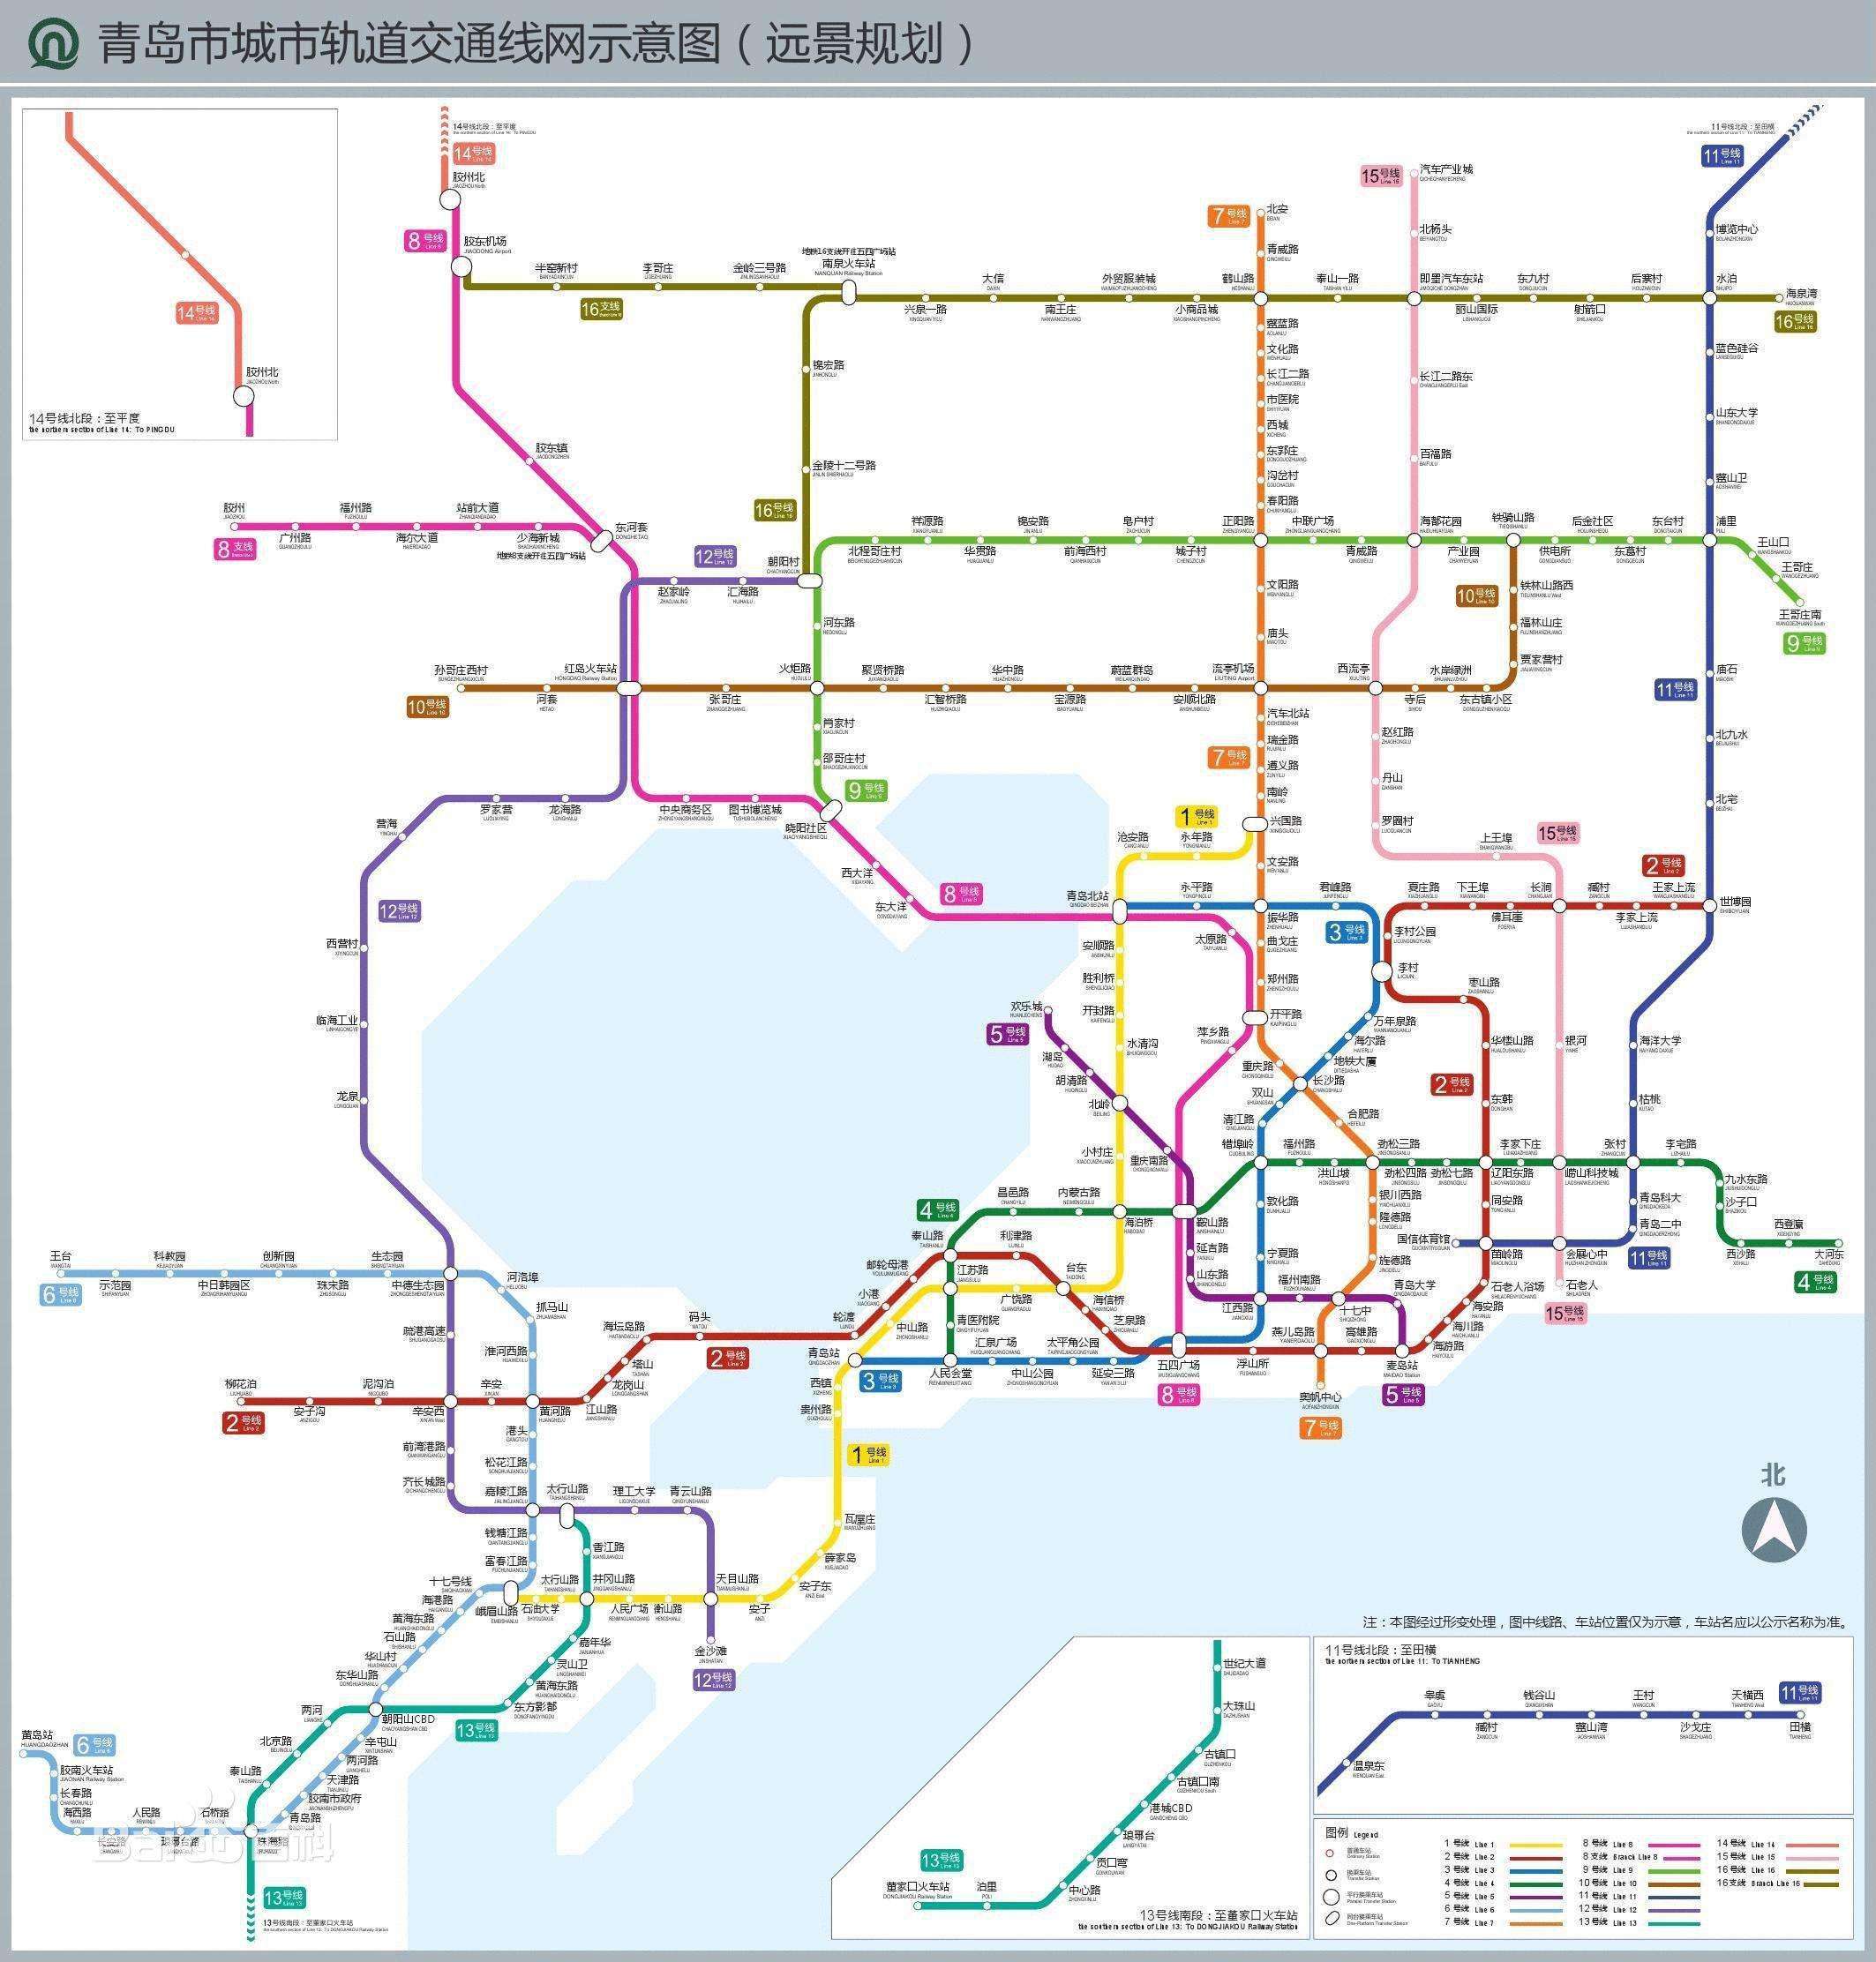 青岛地铁2020年线网方案及远景规划